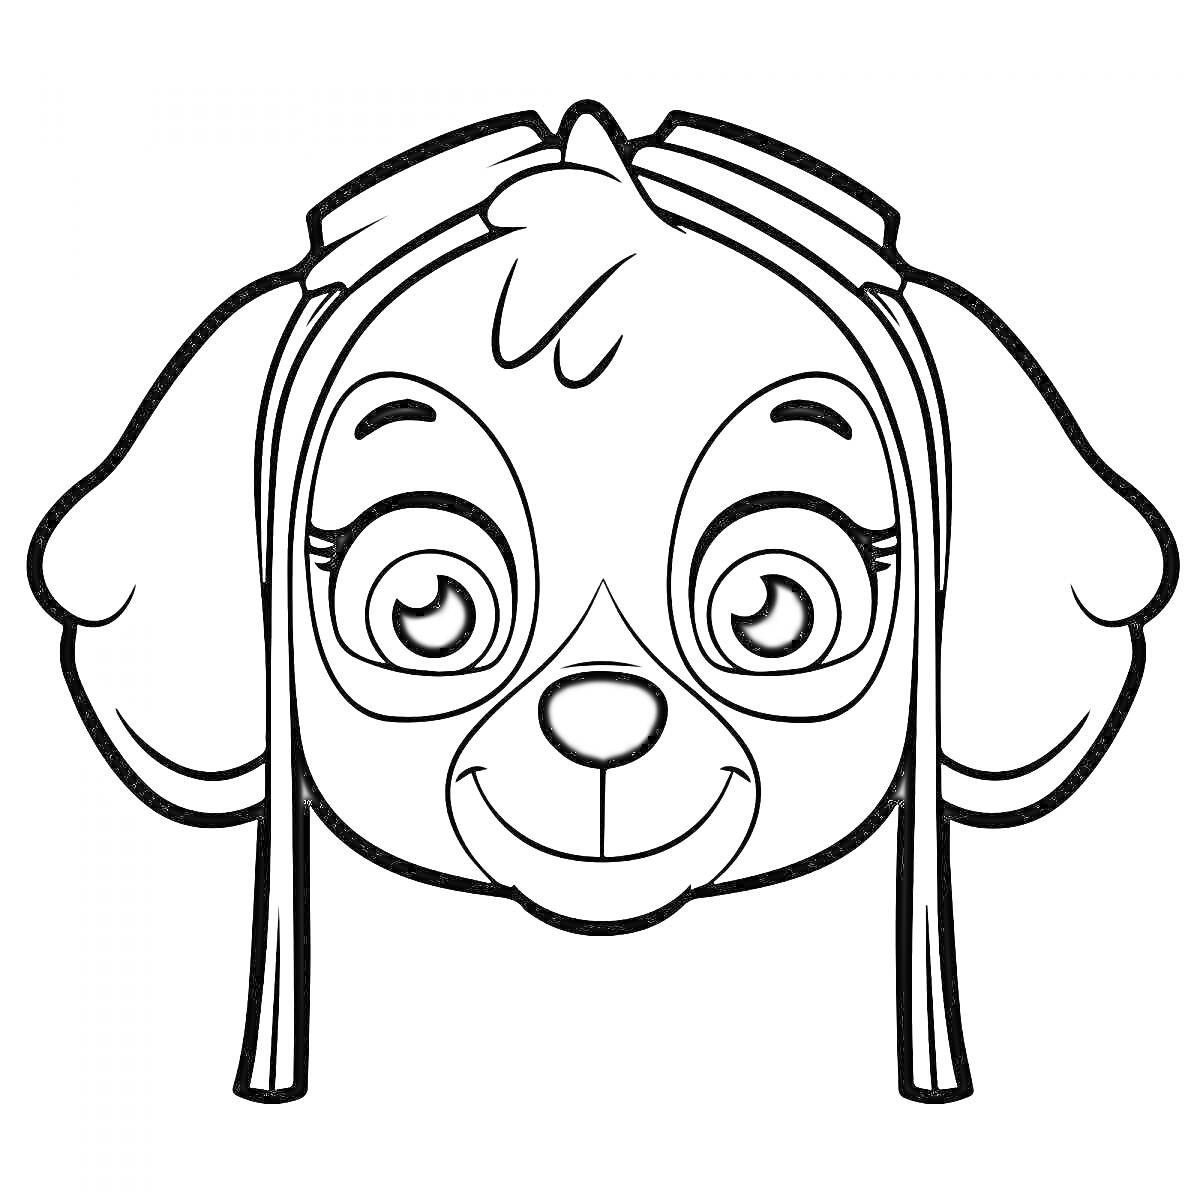 Раскраска Скай - щенок с большими глазами, ушами и защитными очками на голове